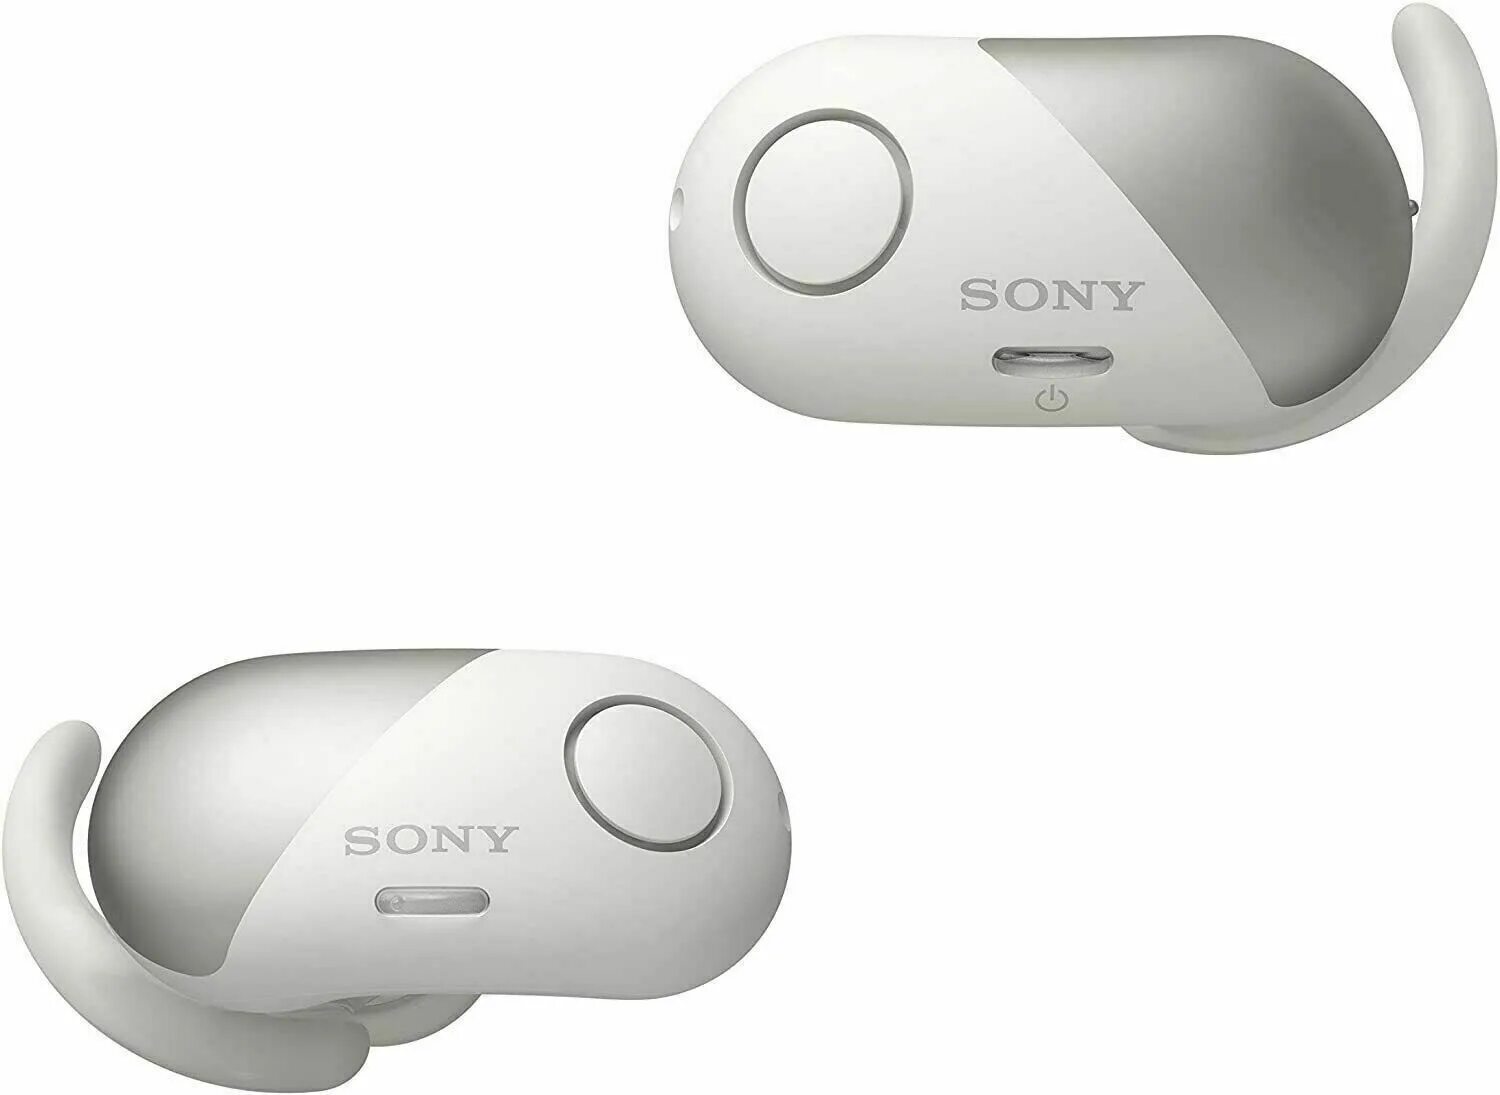 Sony true. Sony WF-sp700n. Беспроводные наушники Sony sp700n. WF 700n Sony. Наушники Sony WF-sp700n.